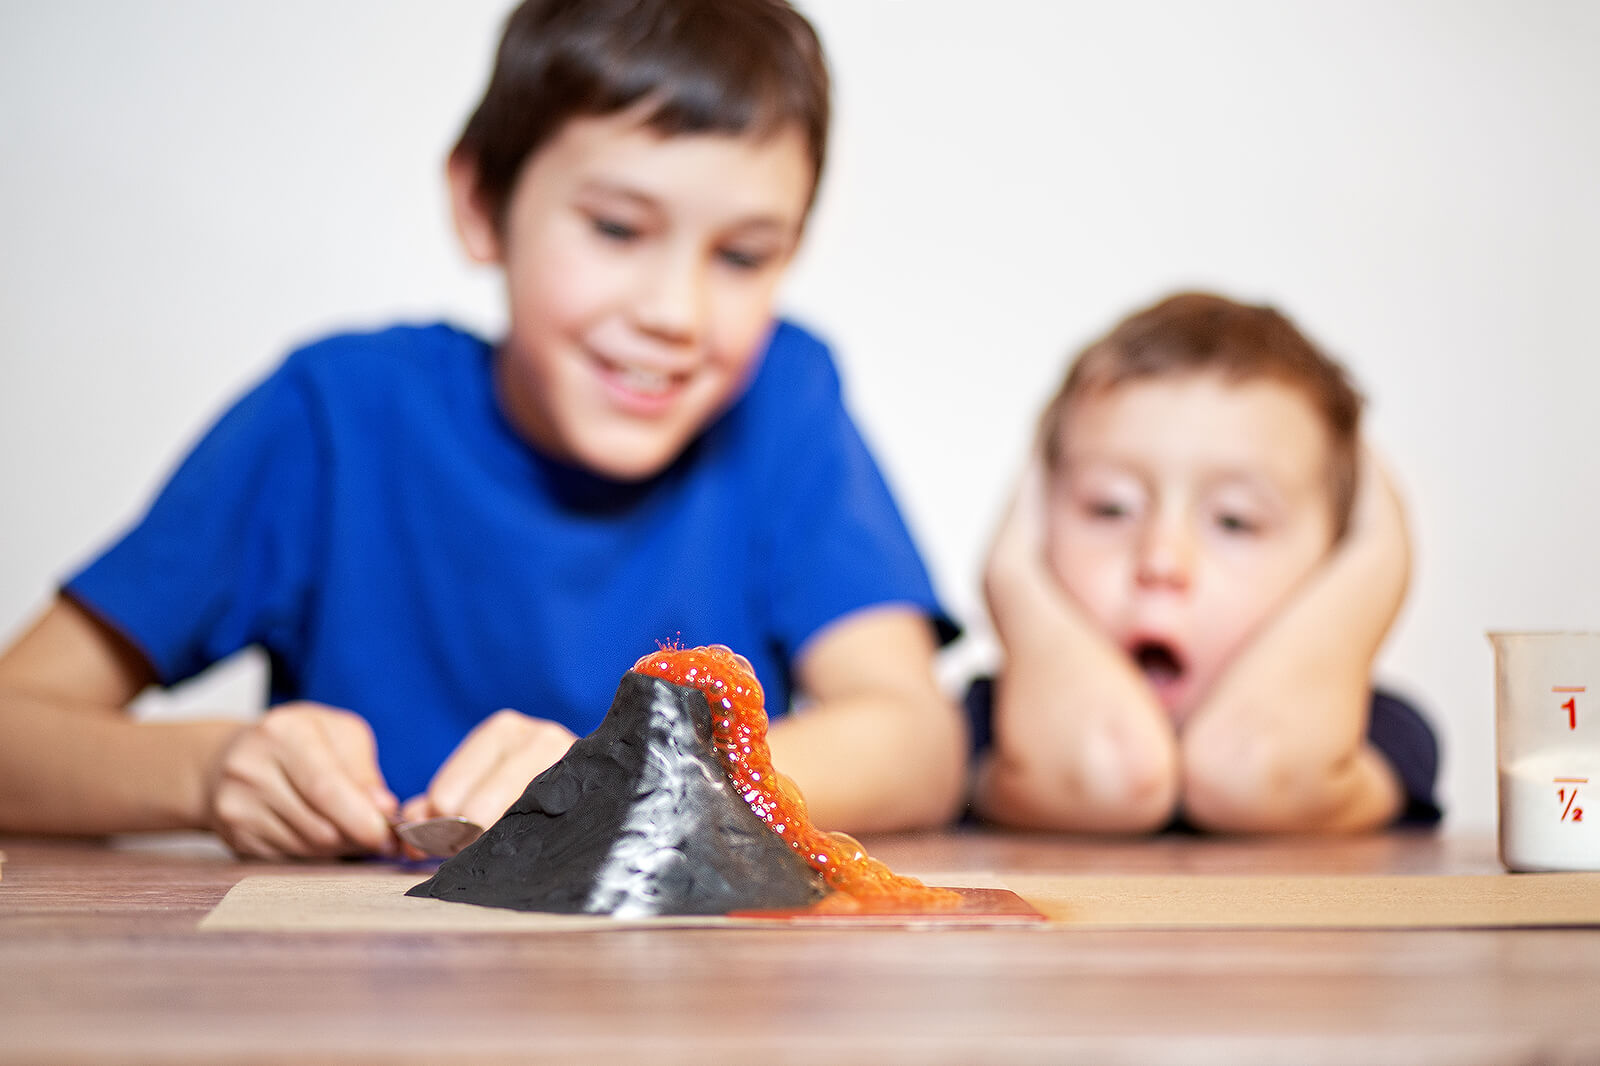 Niños aprendiendo autocontrol gracias a la técnica del volcán.